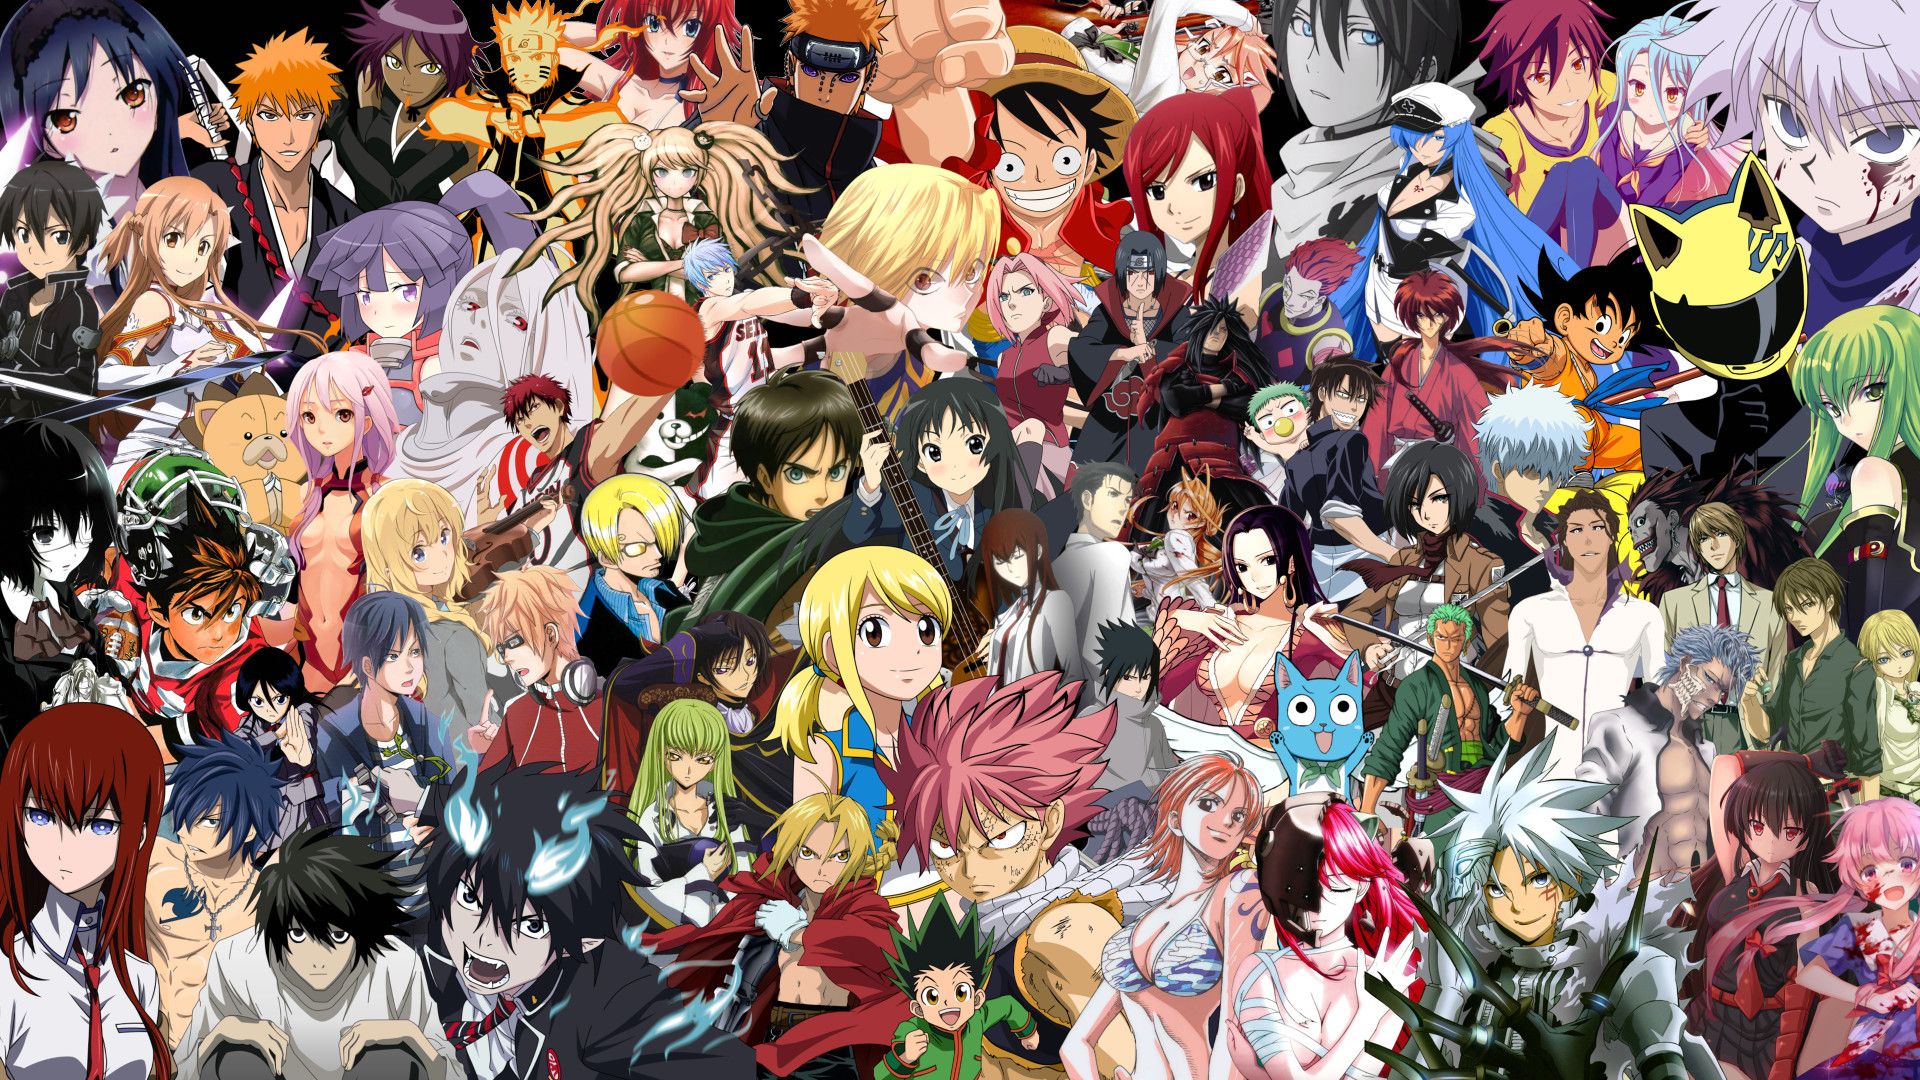 Akatsuki Naruto All Characters HD Anime Wallpapers  HD Wallpapers  ID  37135